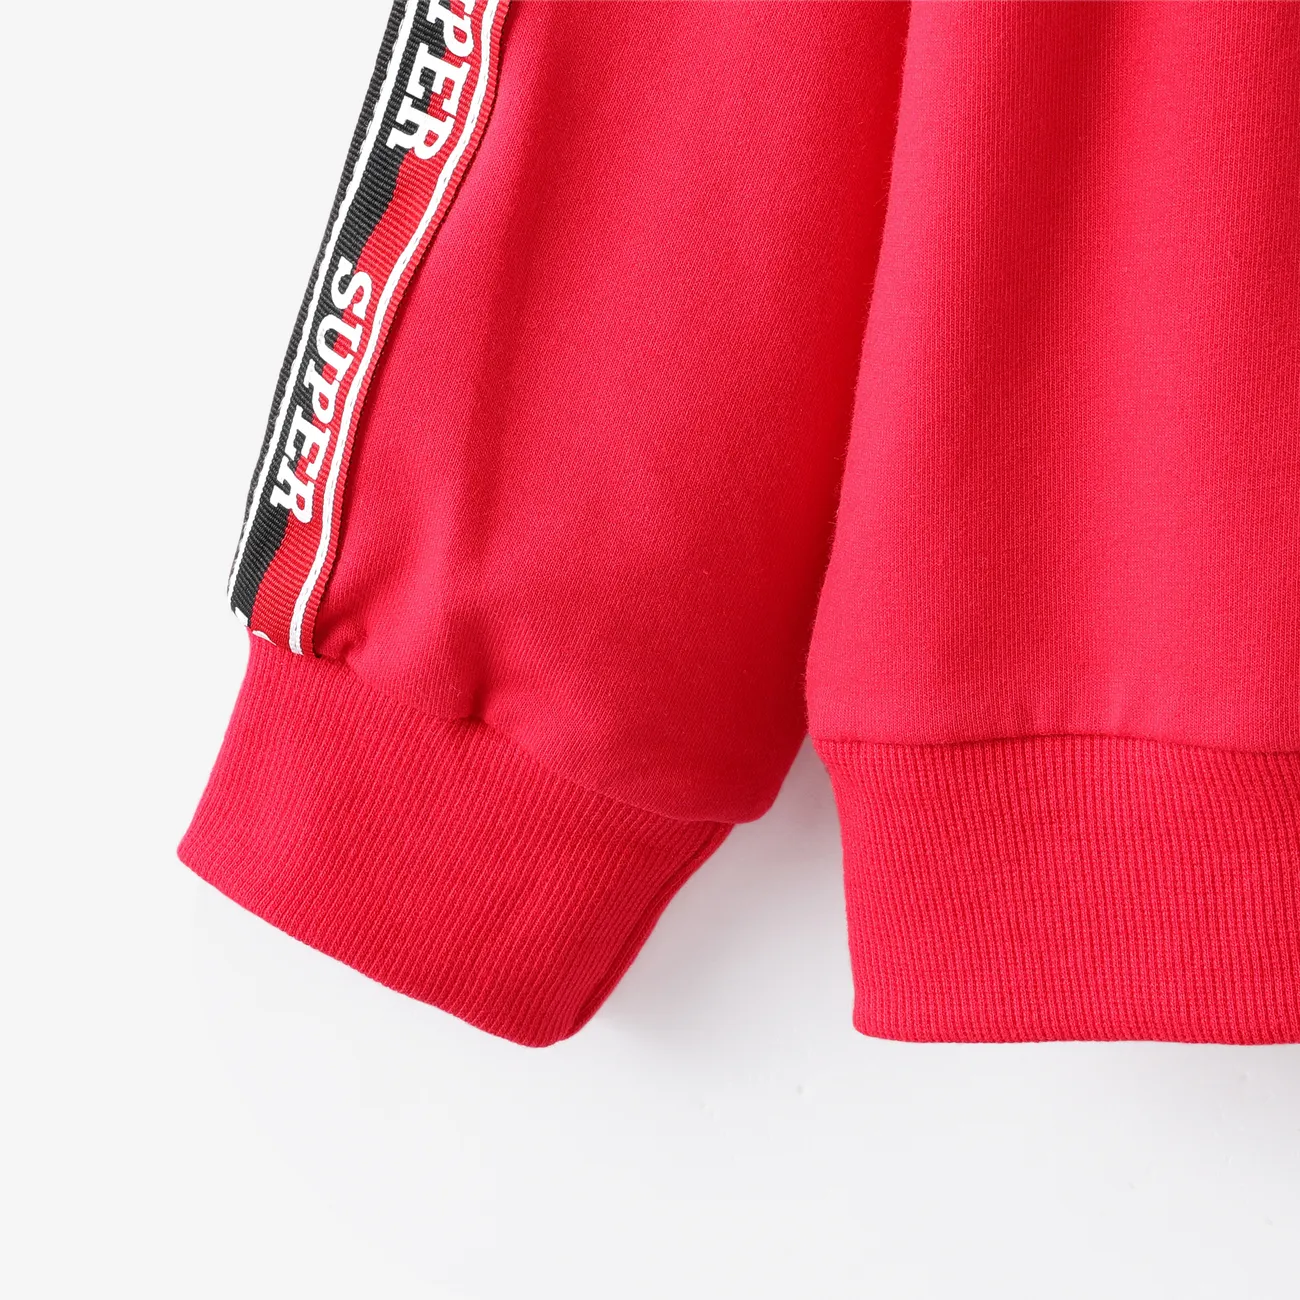 2 قطعة طفل صبي إلكتروني طباعة سستة تصميم قميص من النوع الثقيل الأحمر ومجموعة السراويل المرنة أحمر big image 1